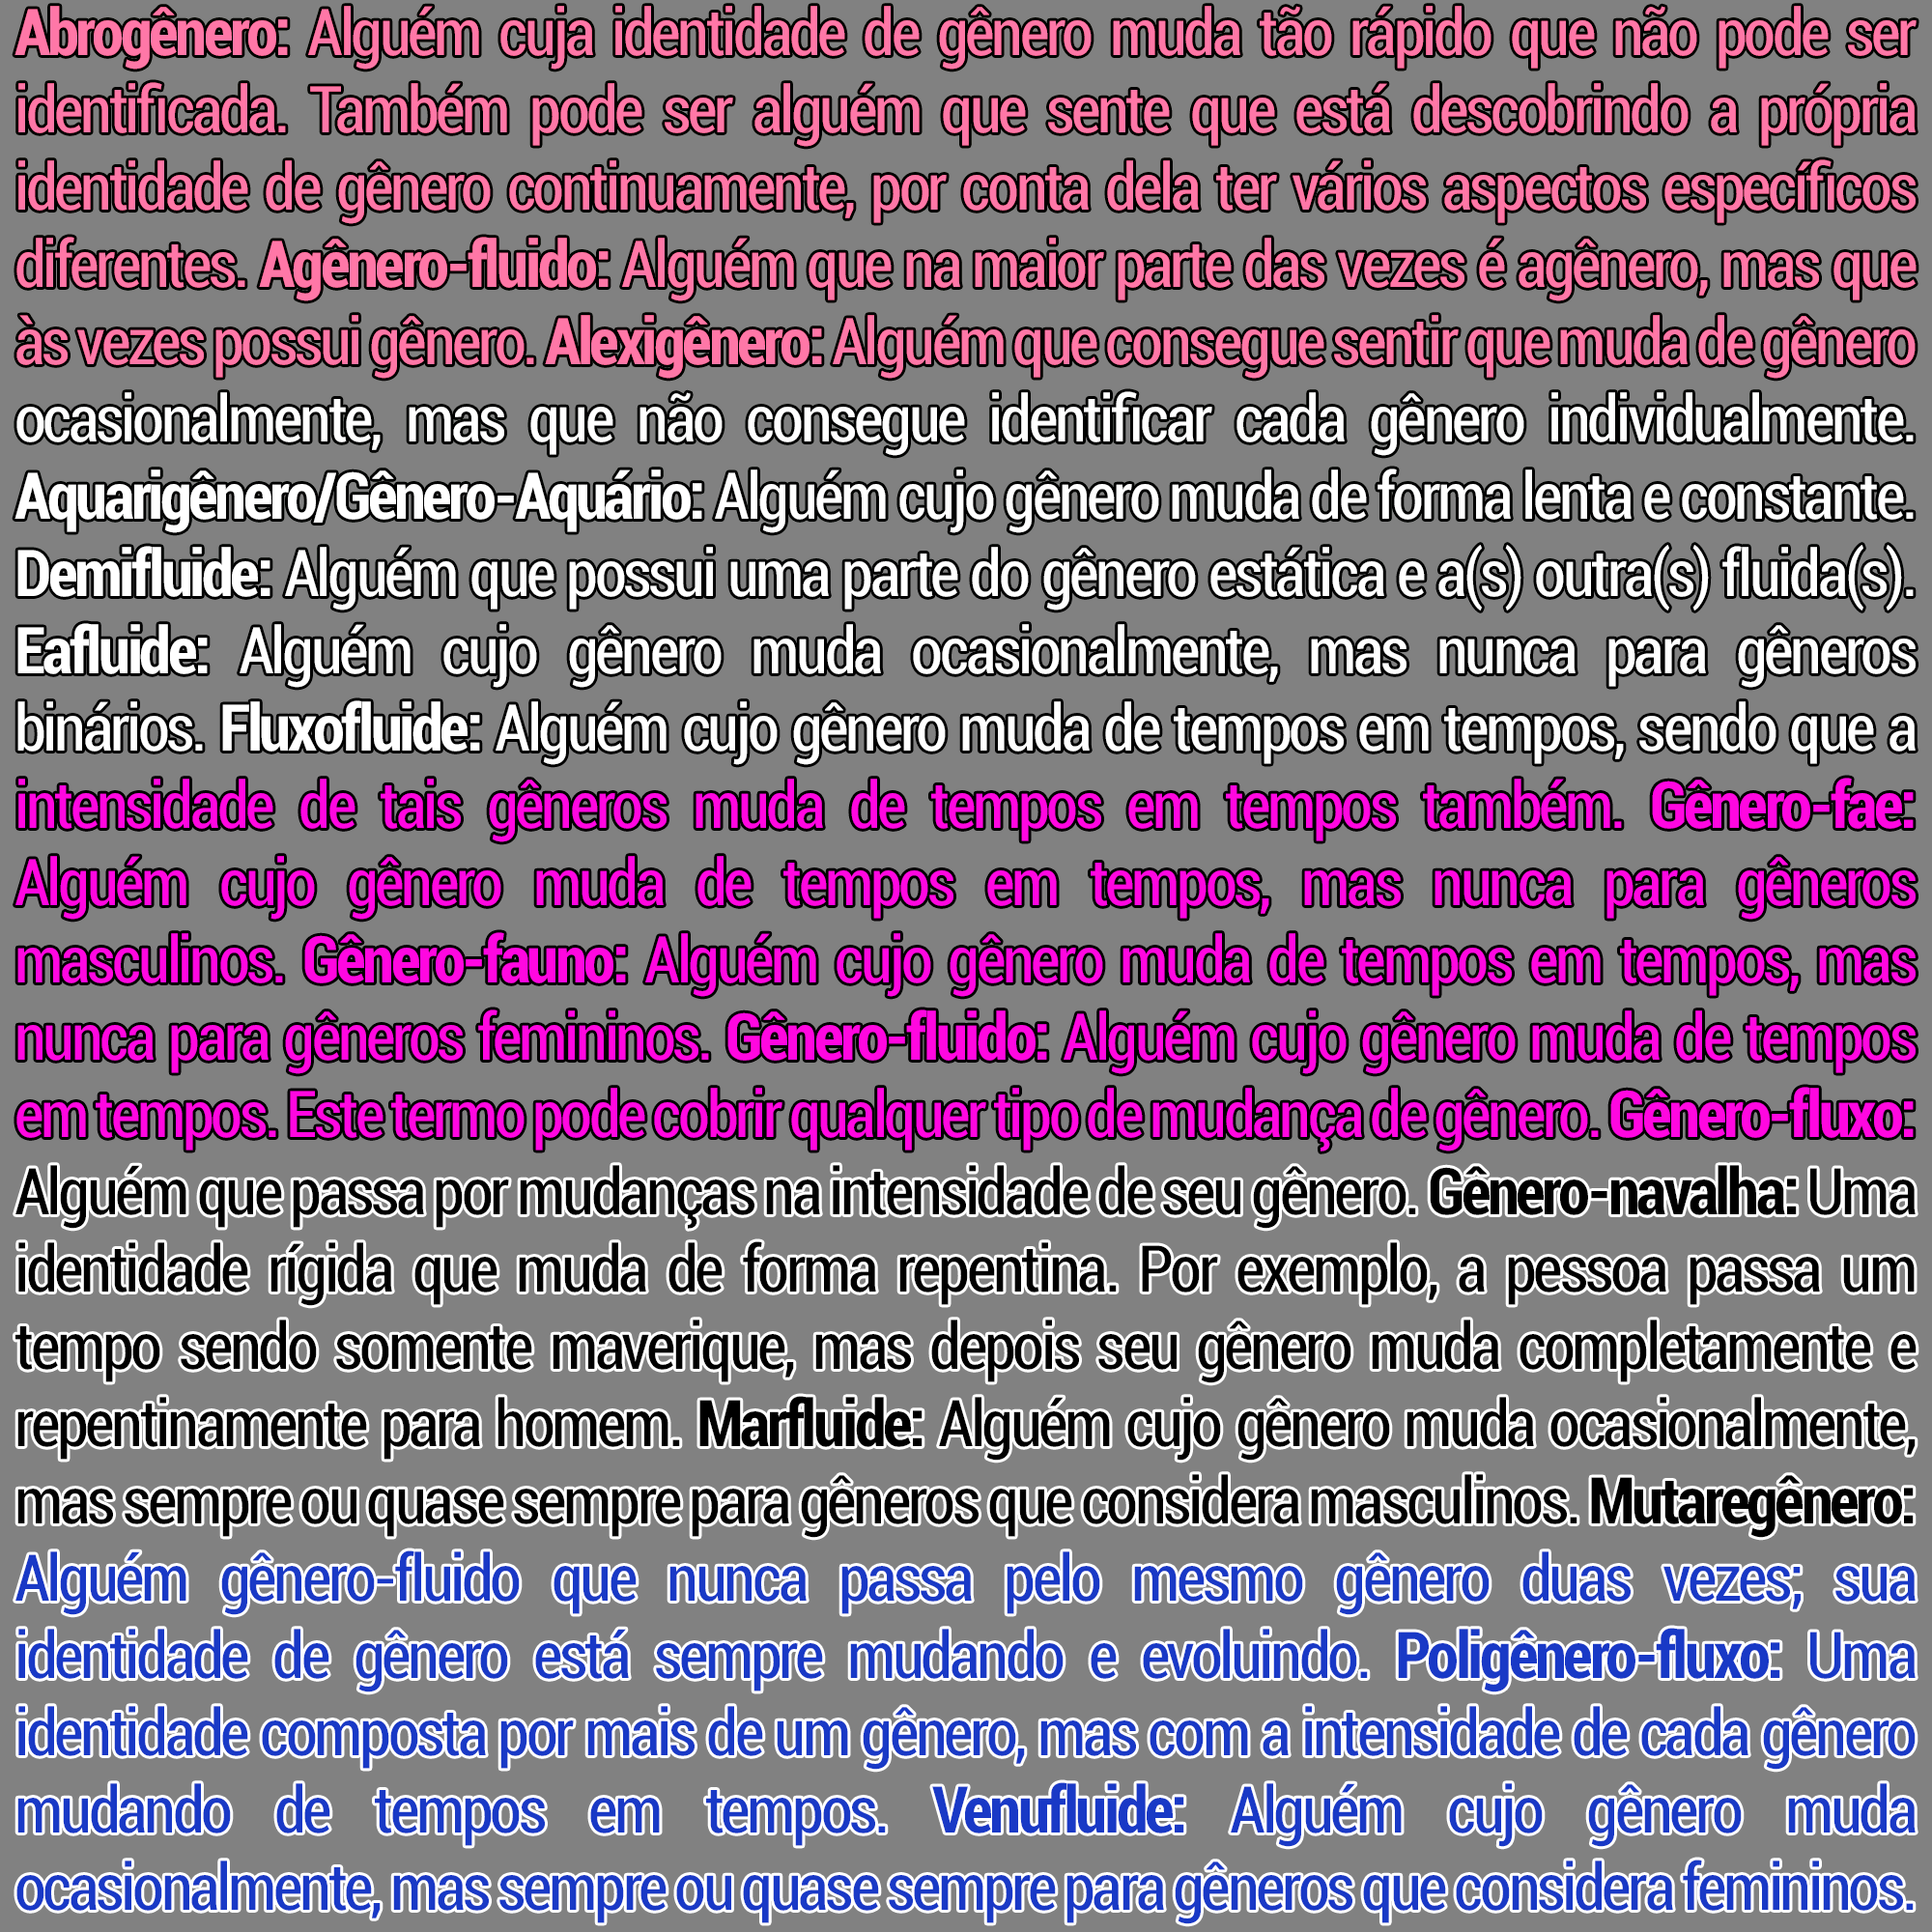 Descrição: texto em fonte condensada dividido em seções rosa, branca, roxa, preta e azul, formando linhas horizontais na frente de um fundo cinza. O texto é composto por definições das seguintes identidades: abrogênero, agênero-fluido, alexigênero, aquarigênero/gênero-Aquário, demifluida, eafluida, fluxofluida, gênero-fae, gênero-fauno, gênero-fluido, gênero-fluxo, gênero-navalha, marfluida, mutaregênero, poligênero-fluxo e venufluida.